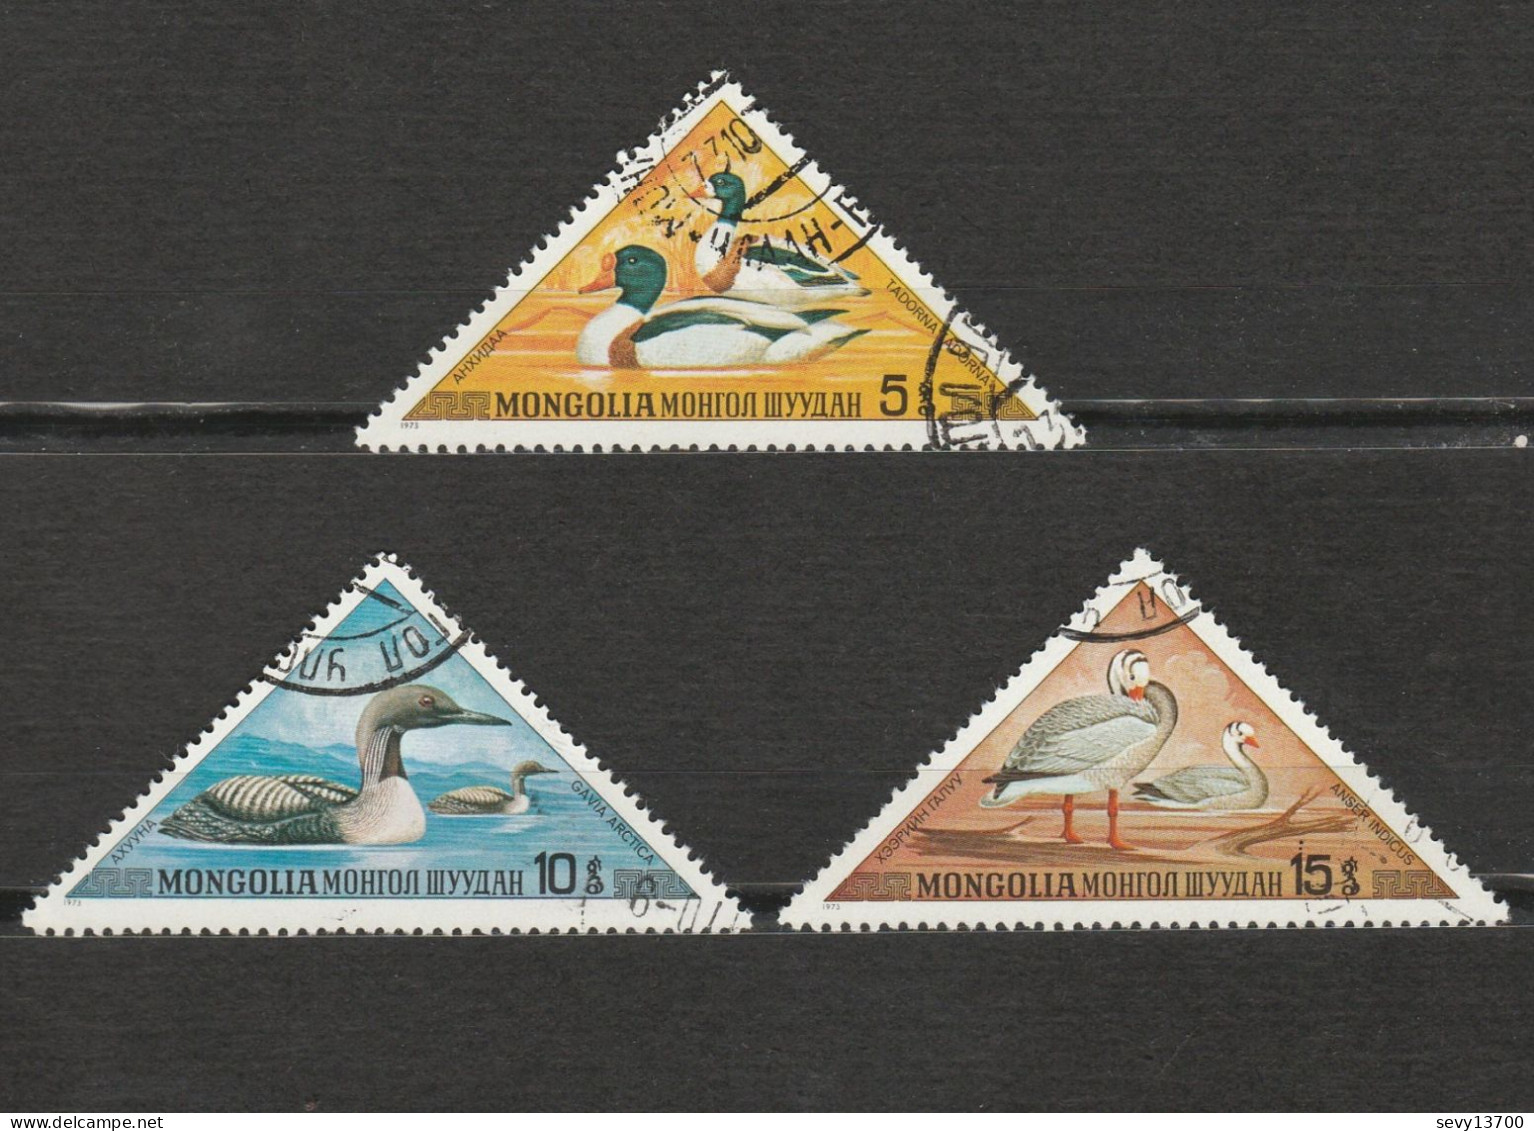 Mongolie - lot 40 timbres Les animaux, chevaux moutons castors gazelles chiens ours pandas grenouille poissons oiseaux